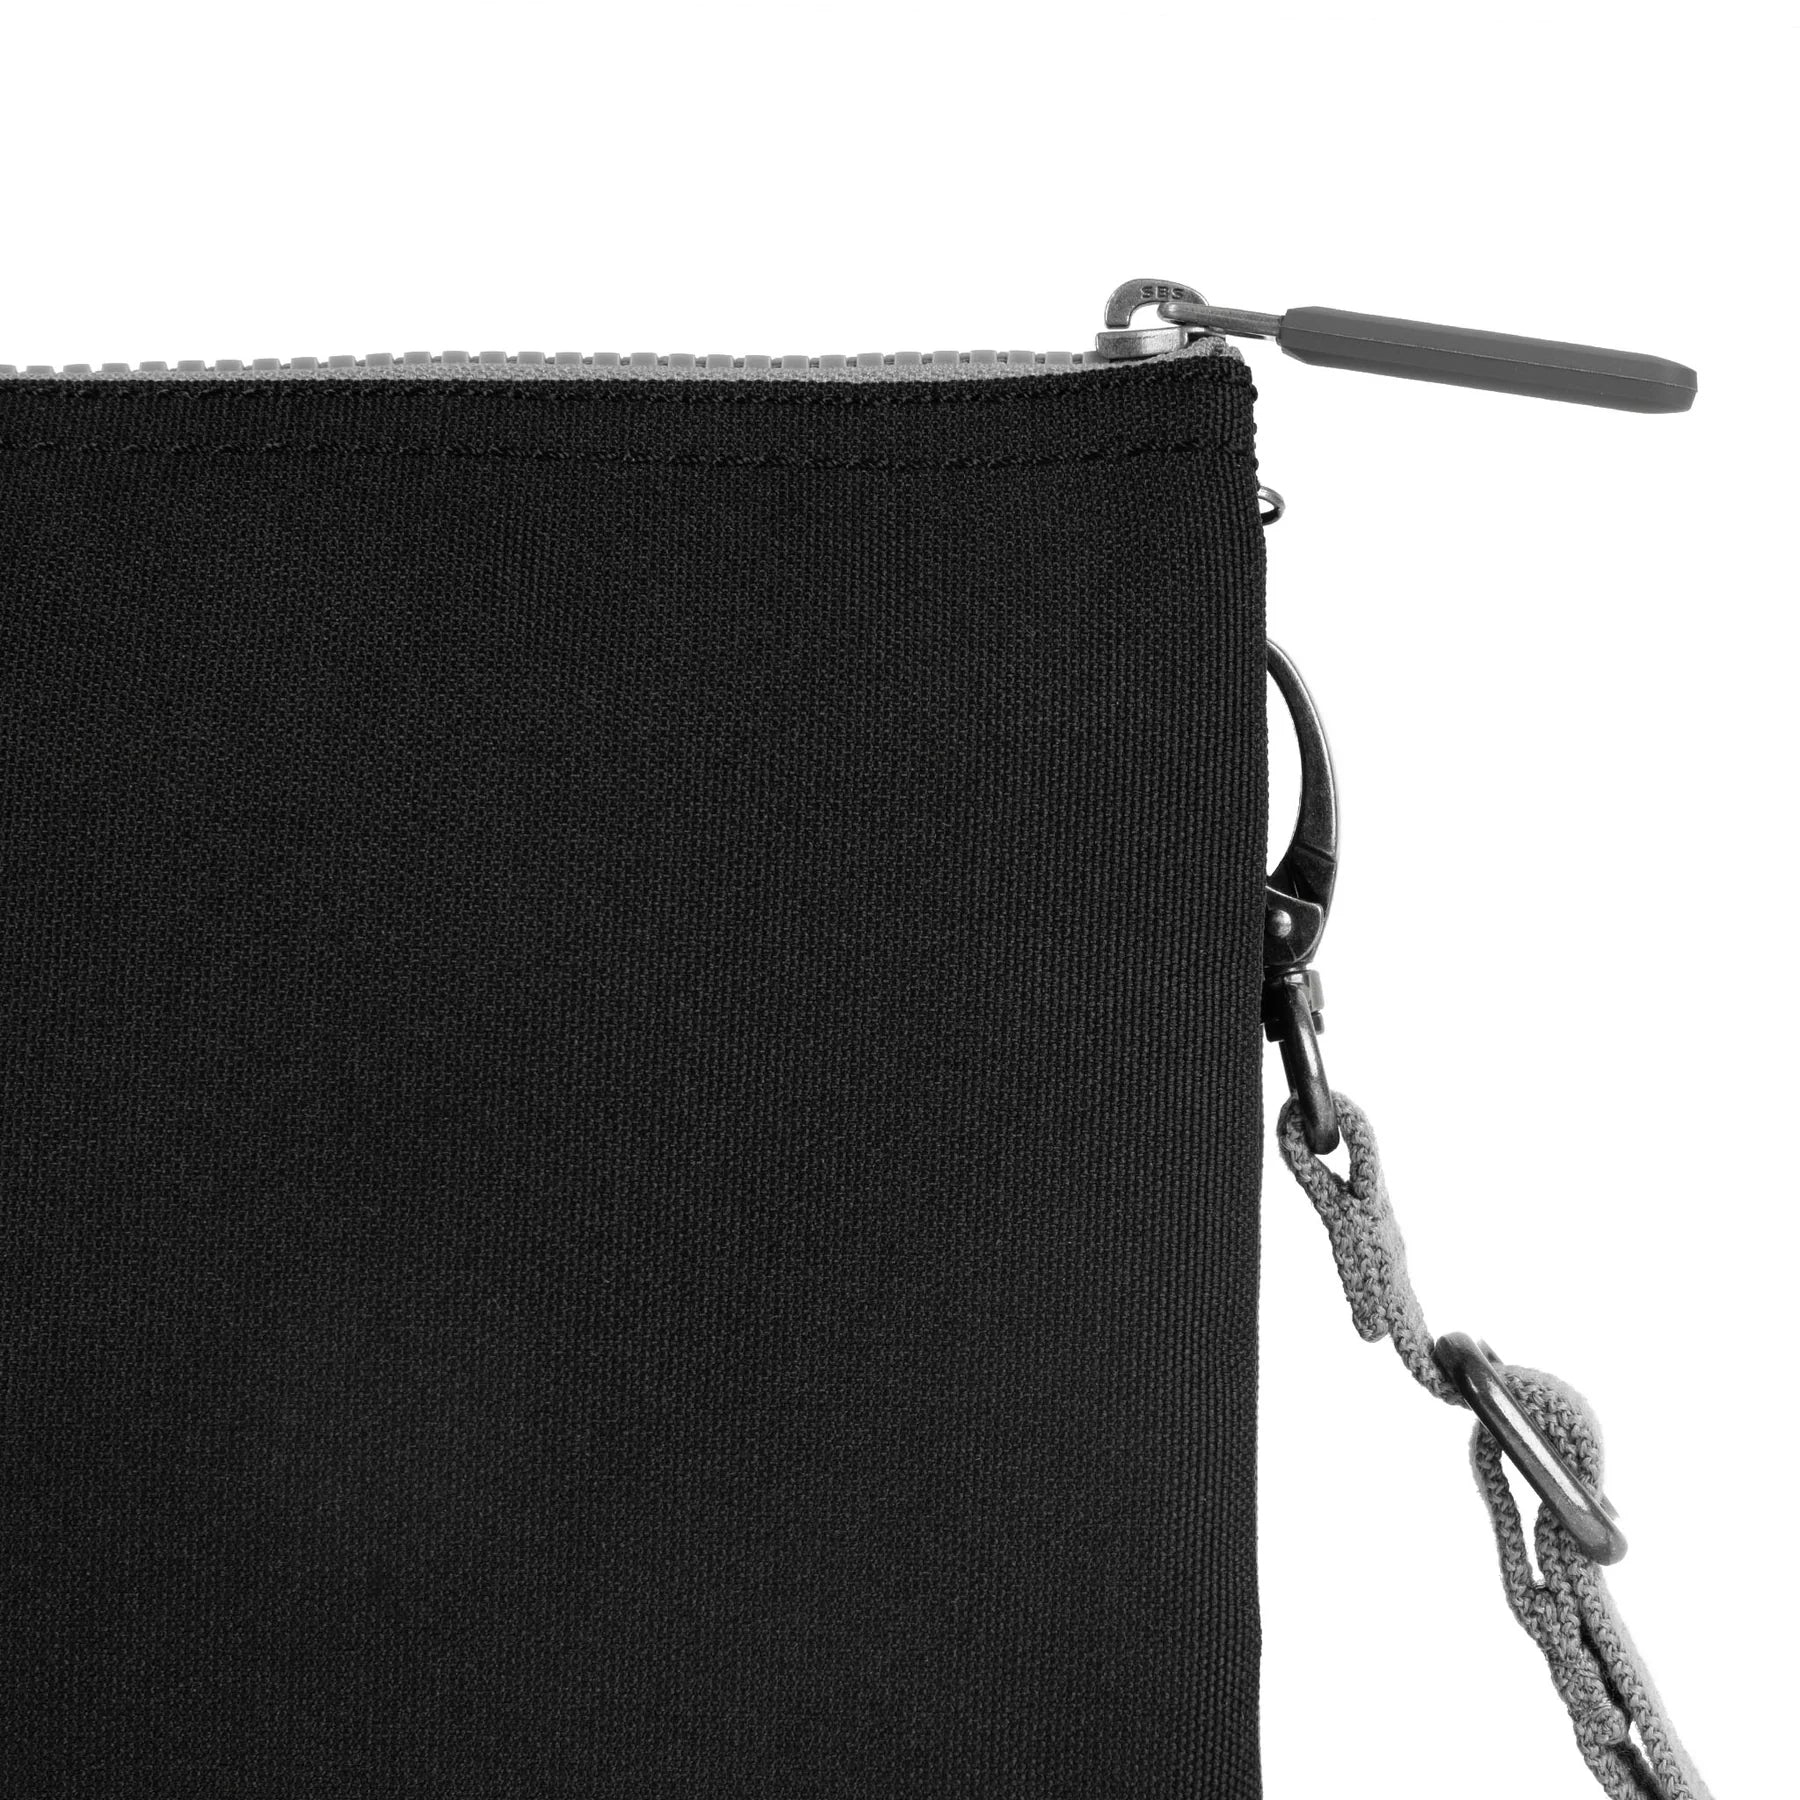 Roka Grey Carnaby XL Recycled Canvas Crossbody Bag